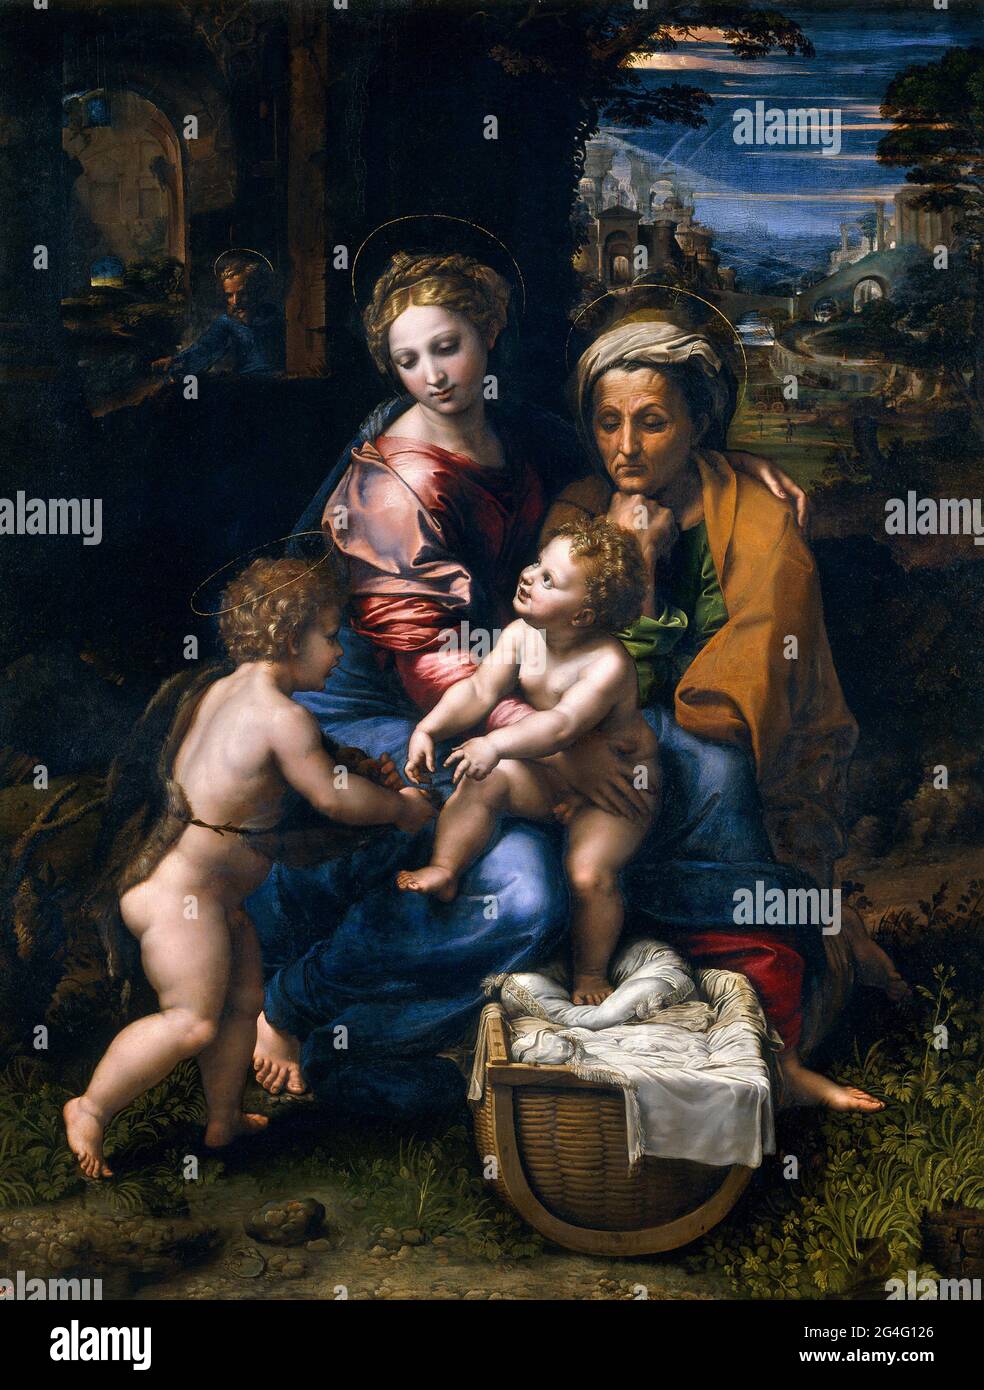 Raphaël. La Sainte famille ou la Perle par Raffaello Sanzio da Urbino (1483–1520), huile sur panneau, c. 1518 Banque D'Images